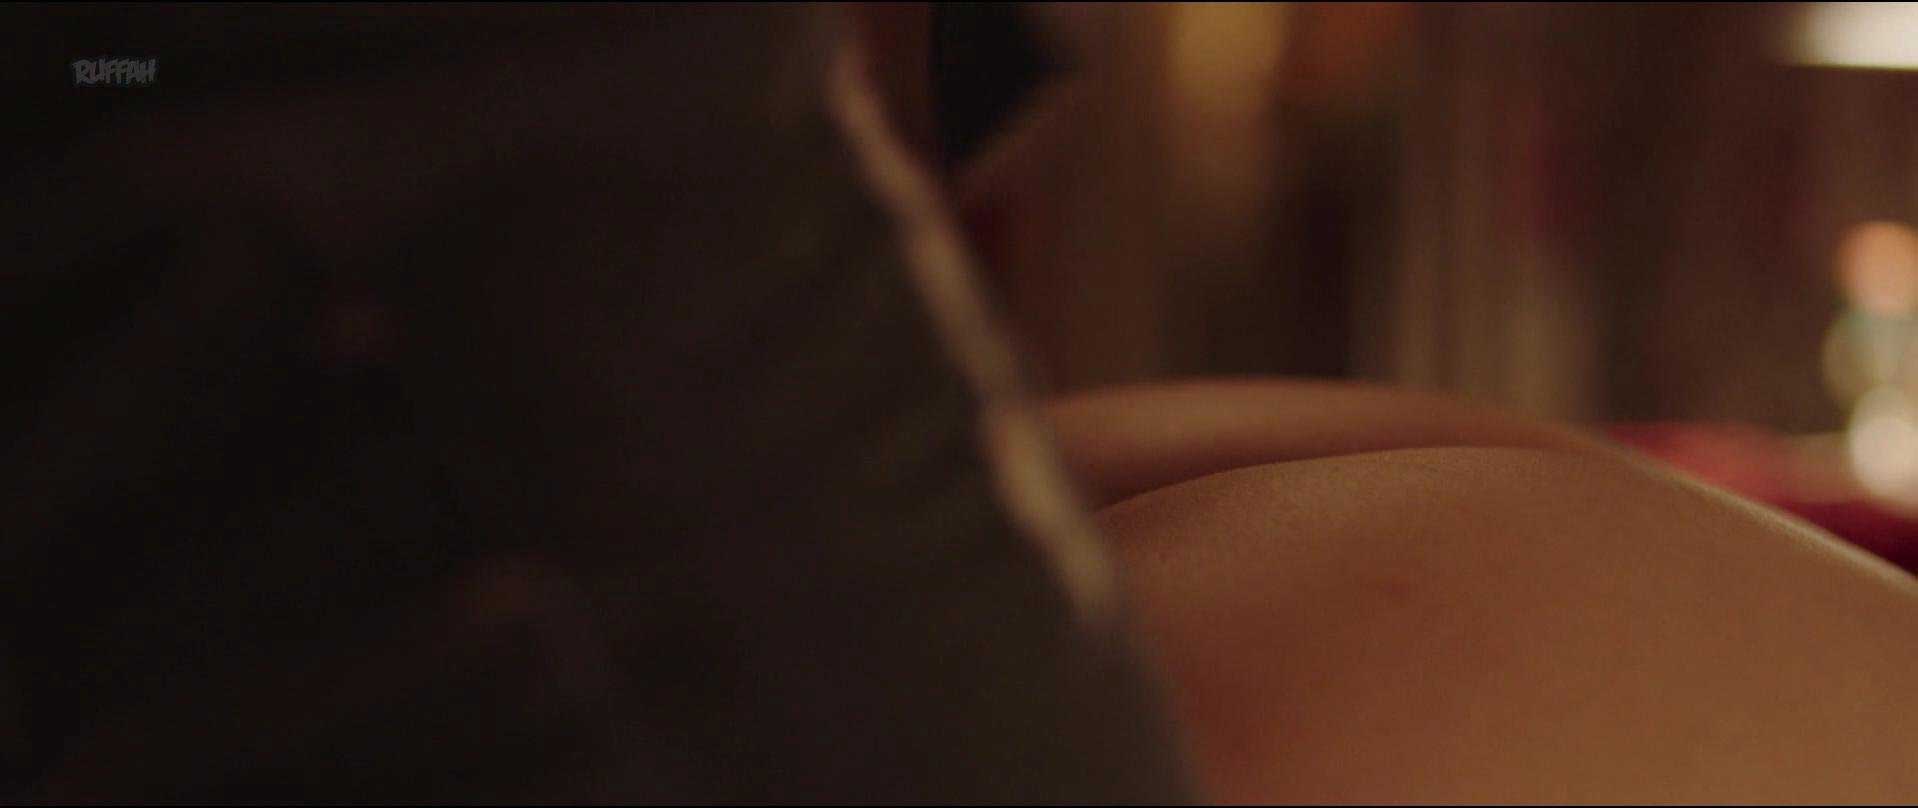 Η Diane Kruger γυμνή σε σκηνές σεξ.